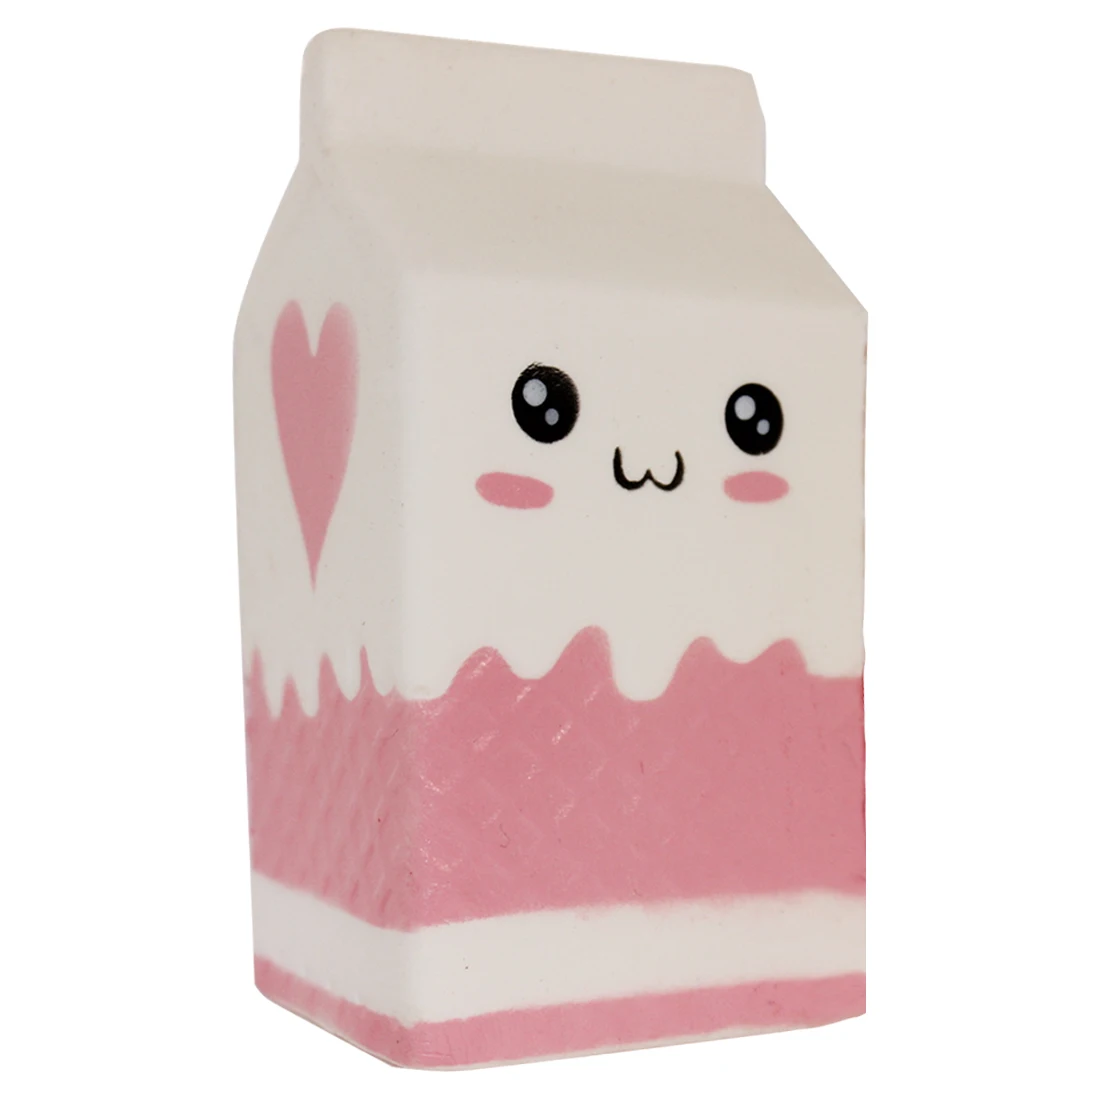 WOTT милые молоко коробка для йогурта медленный отскок Jumbo мягкими супер мягкий замедлить рост Squeeze Игрушка давление рельеф дети игрушечные